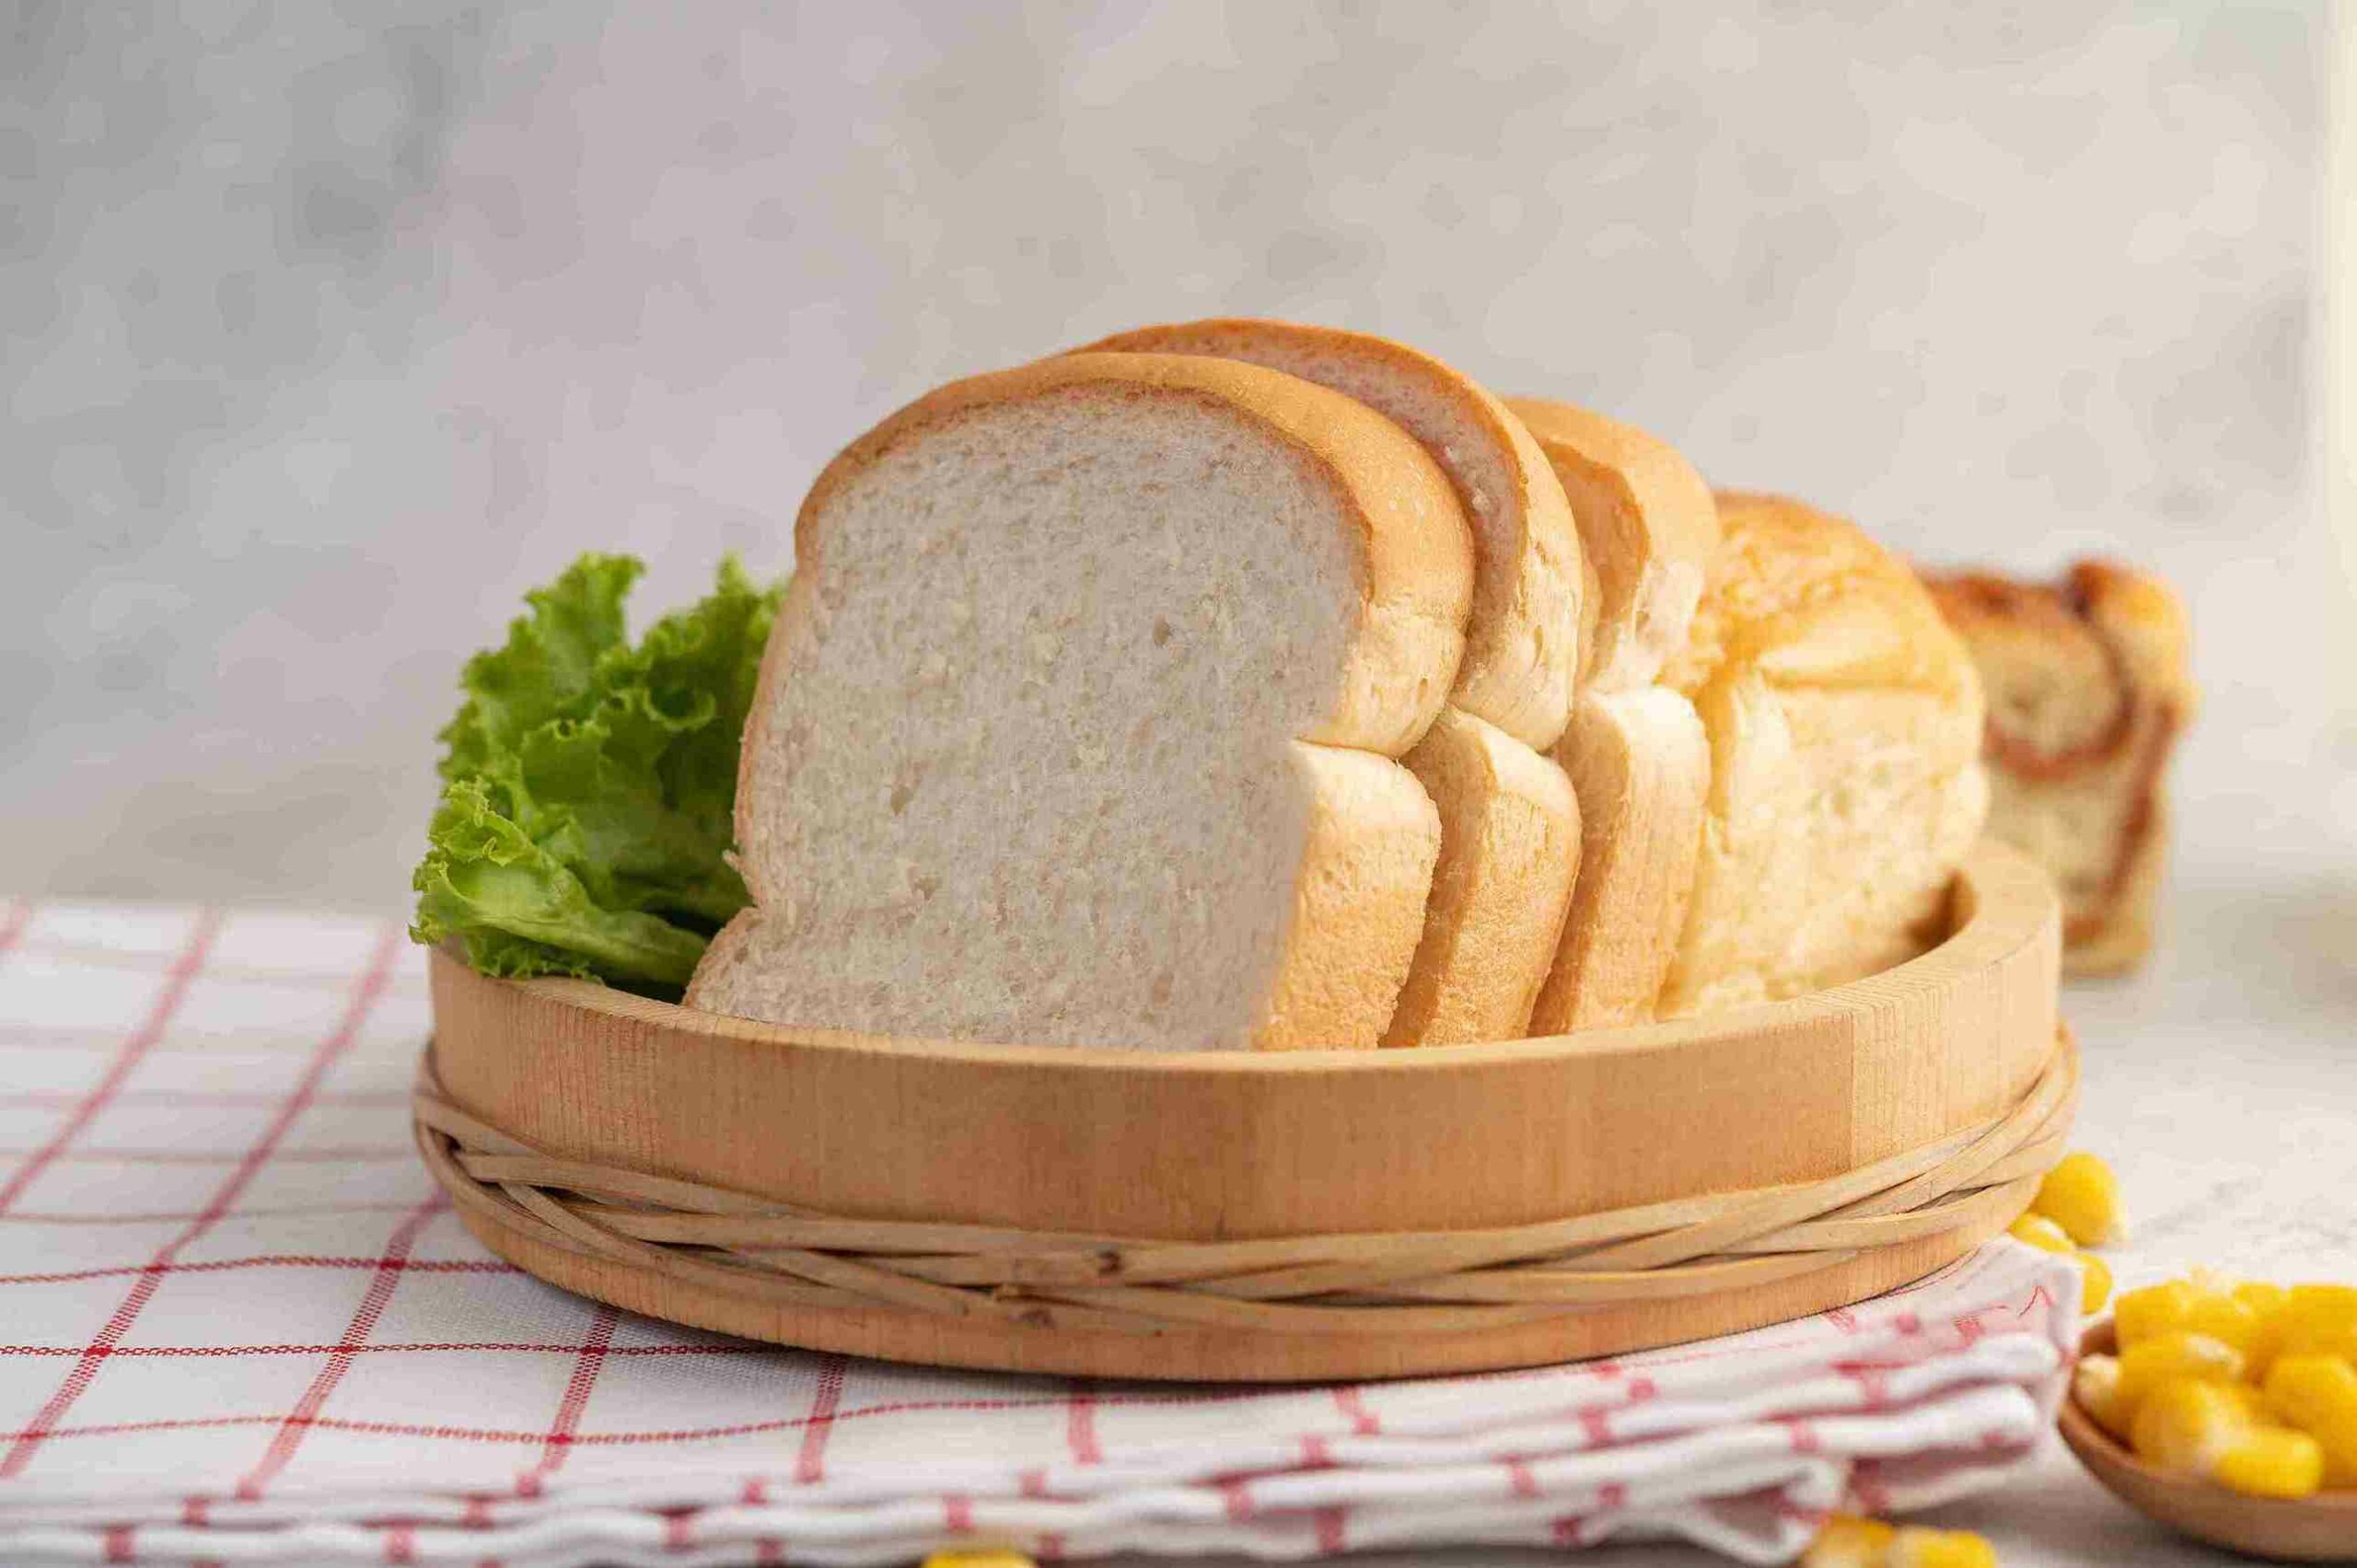 Berapa Kalori Roti Tawar? Ketahui agar Diet Anda Berhasil